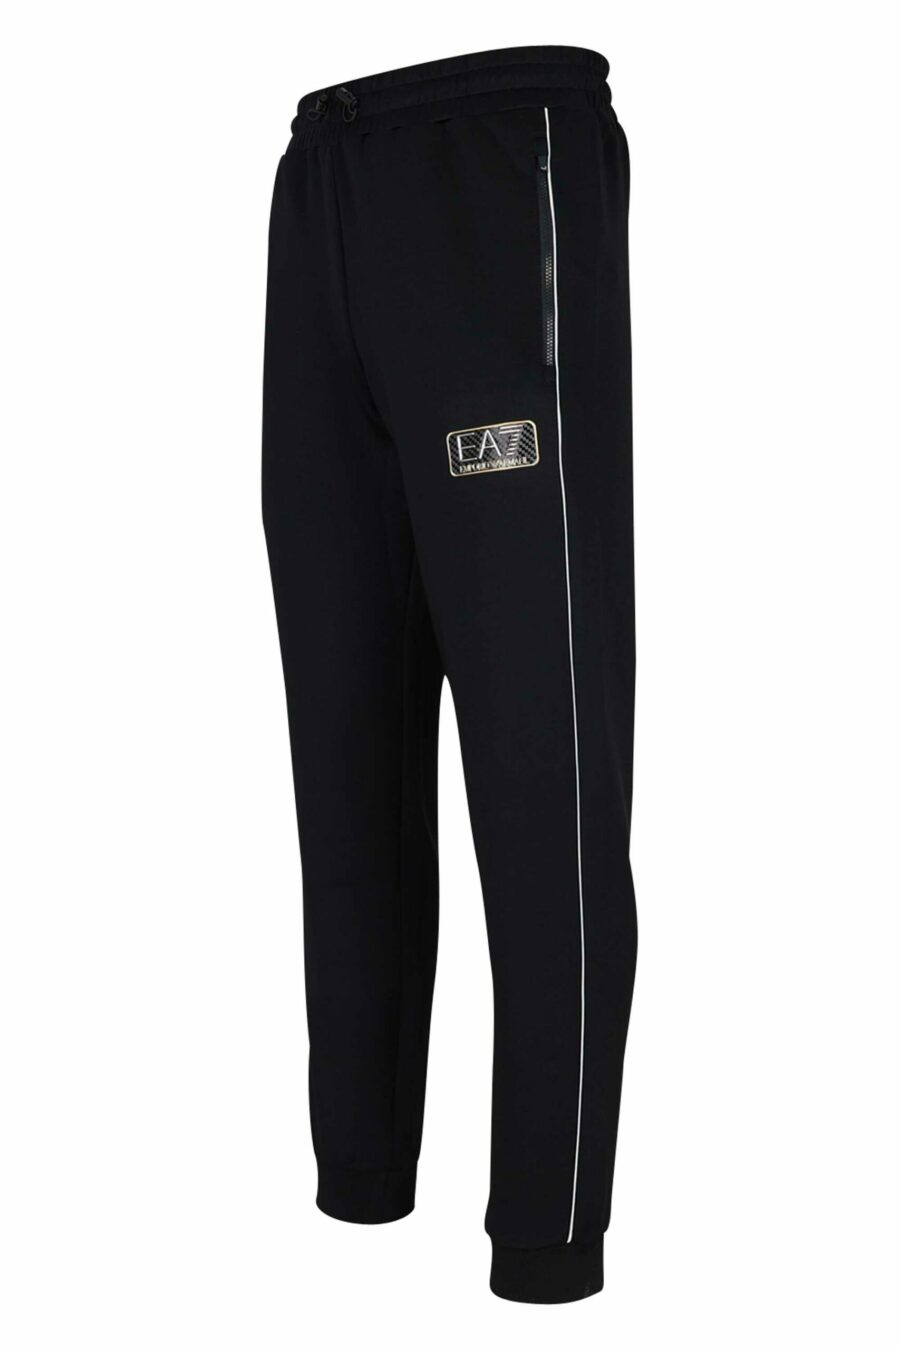 Pantalón de chándal negro con lineas blancas y logo en metal "lux identity" - 8057767646189 1 scaled